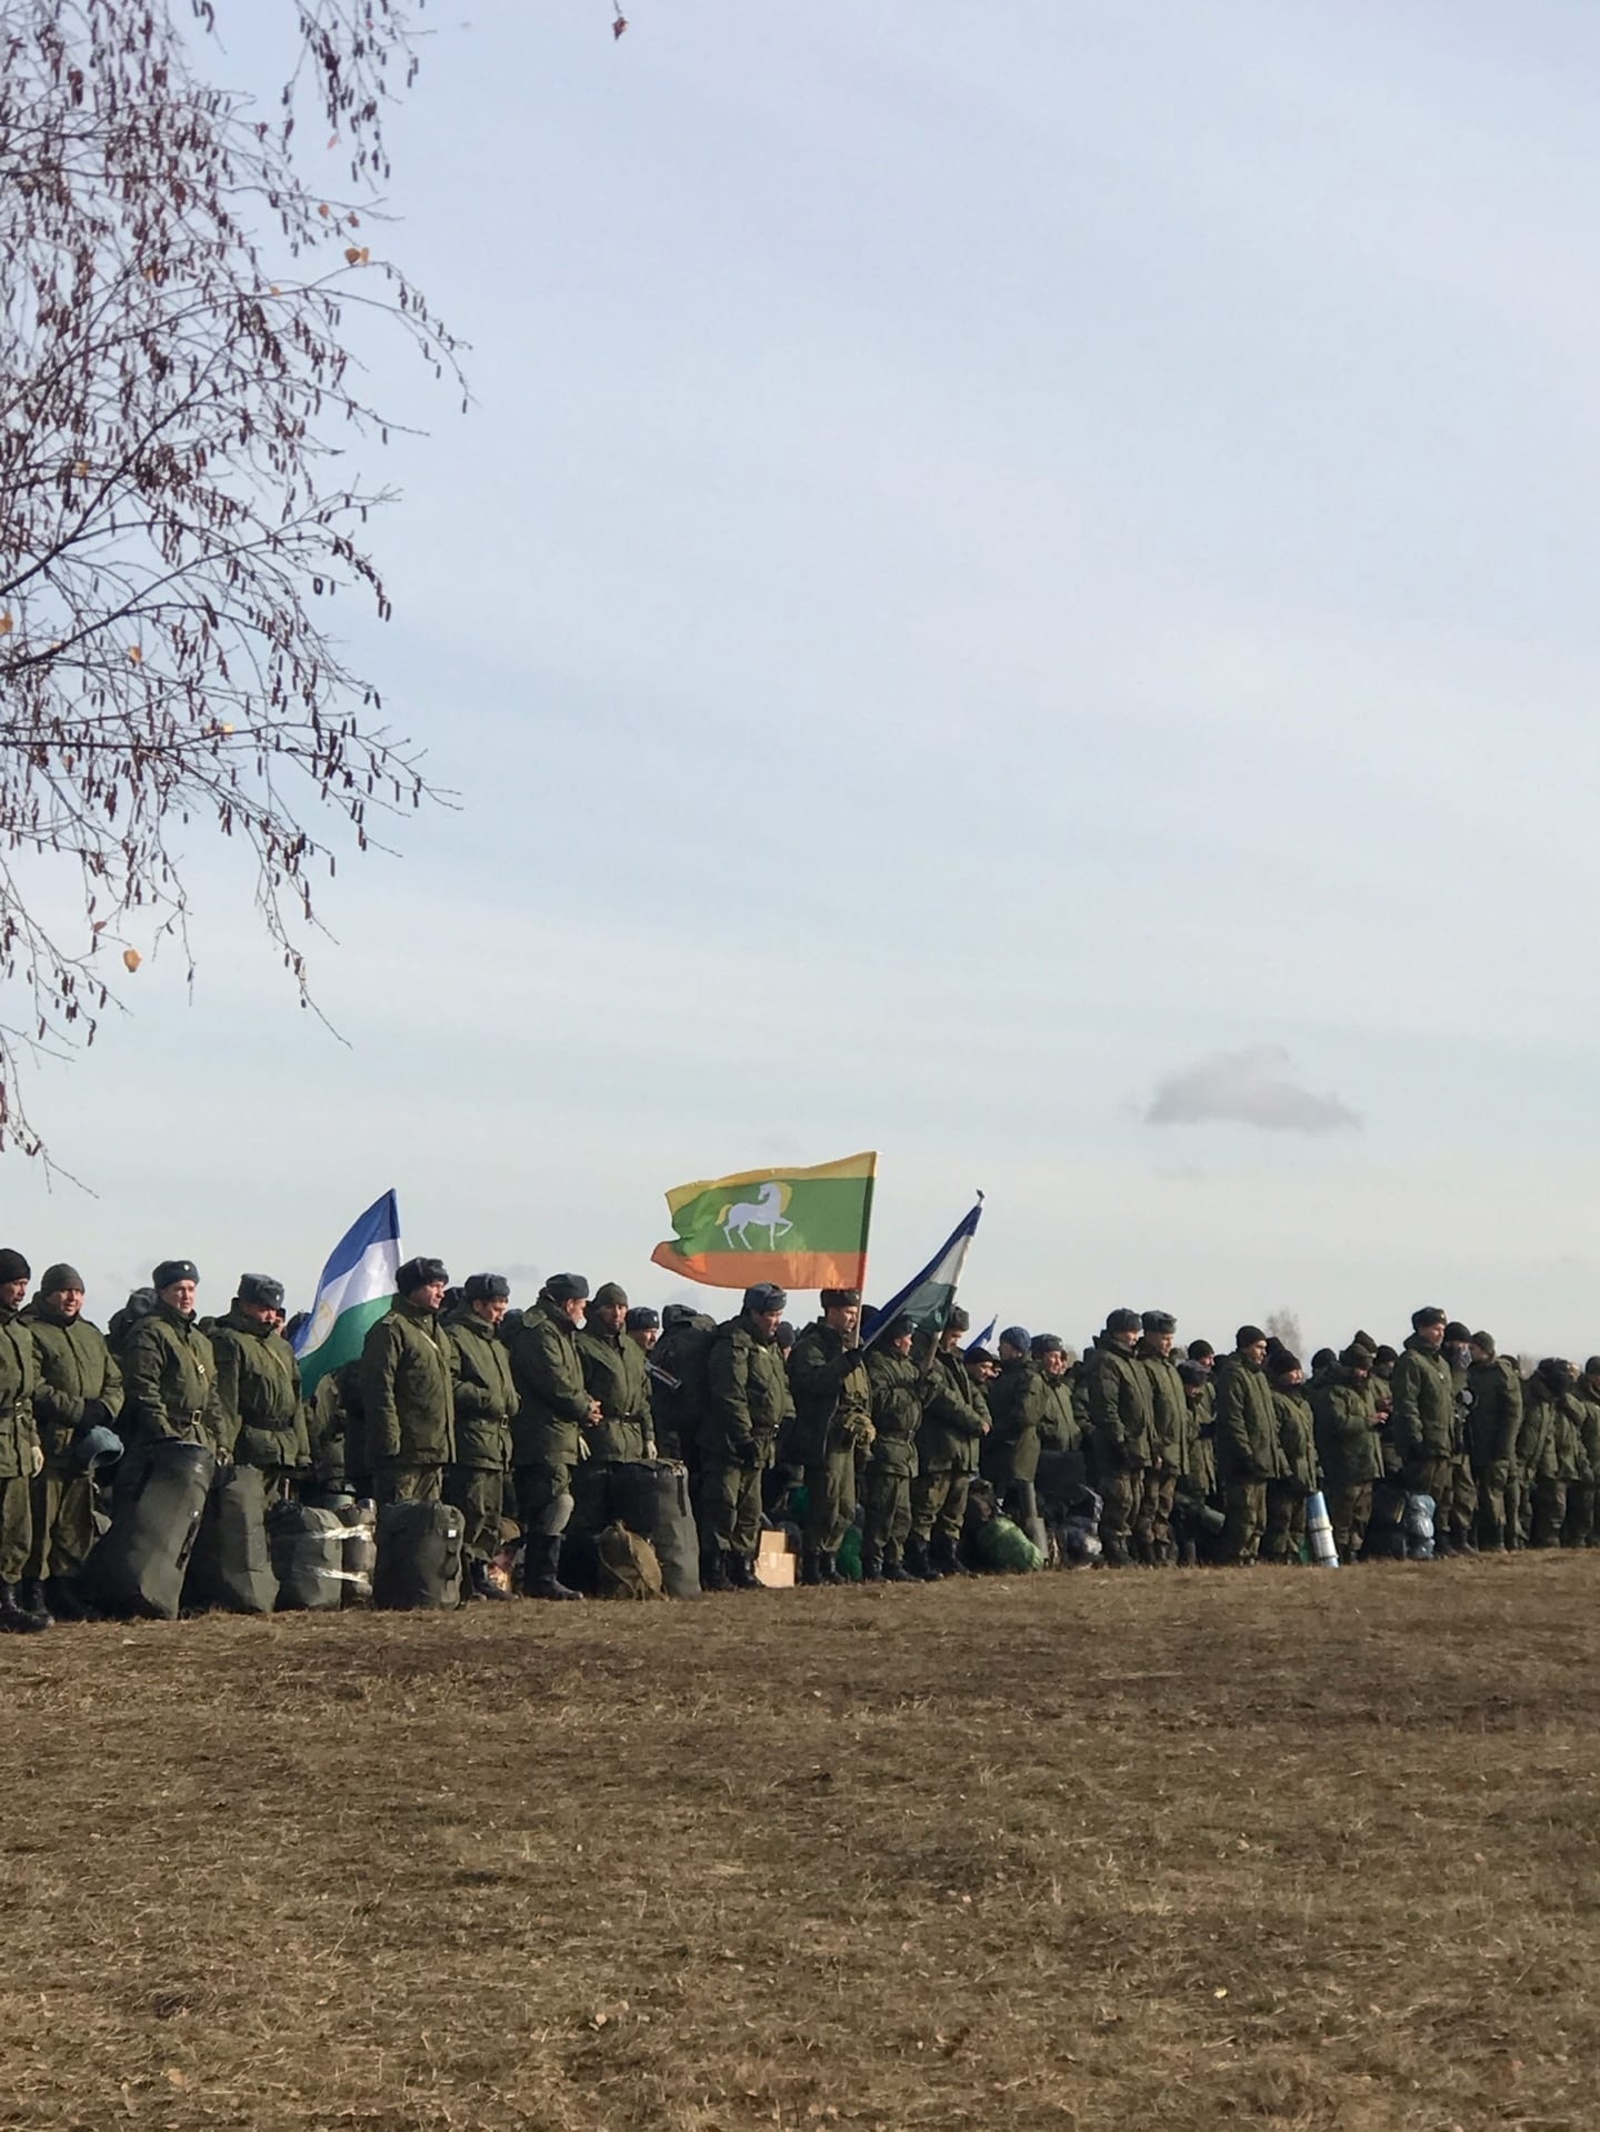 "Генерал Иғзаҡов" хәрбиҙәр рухын күтәрә